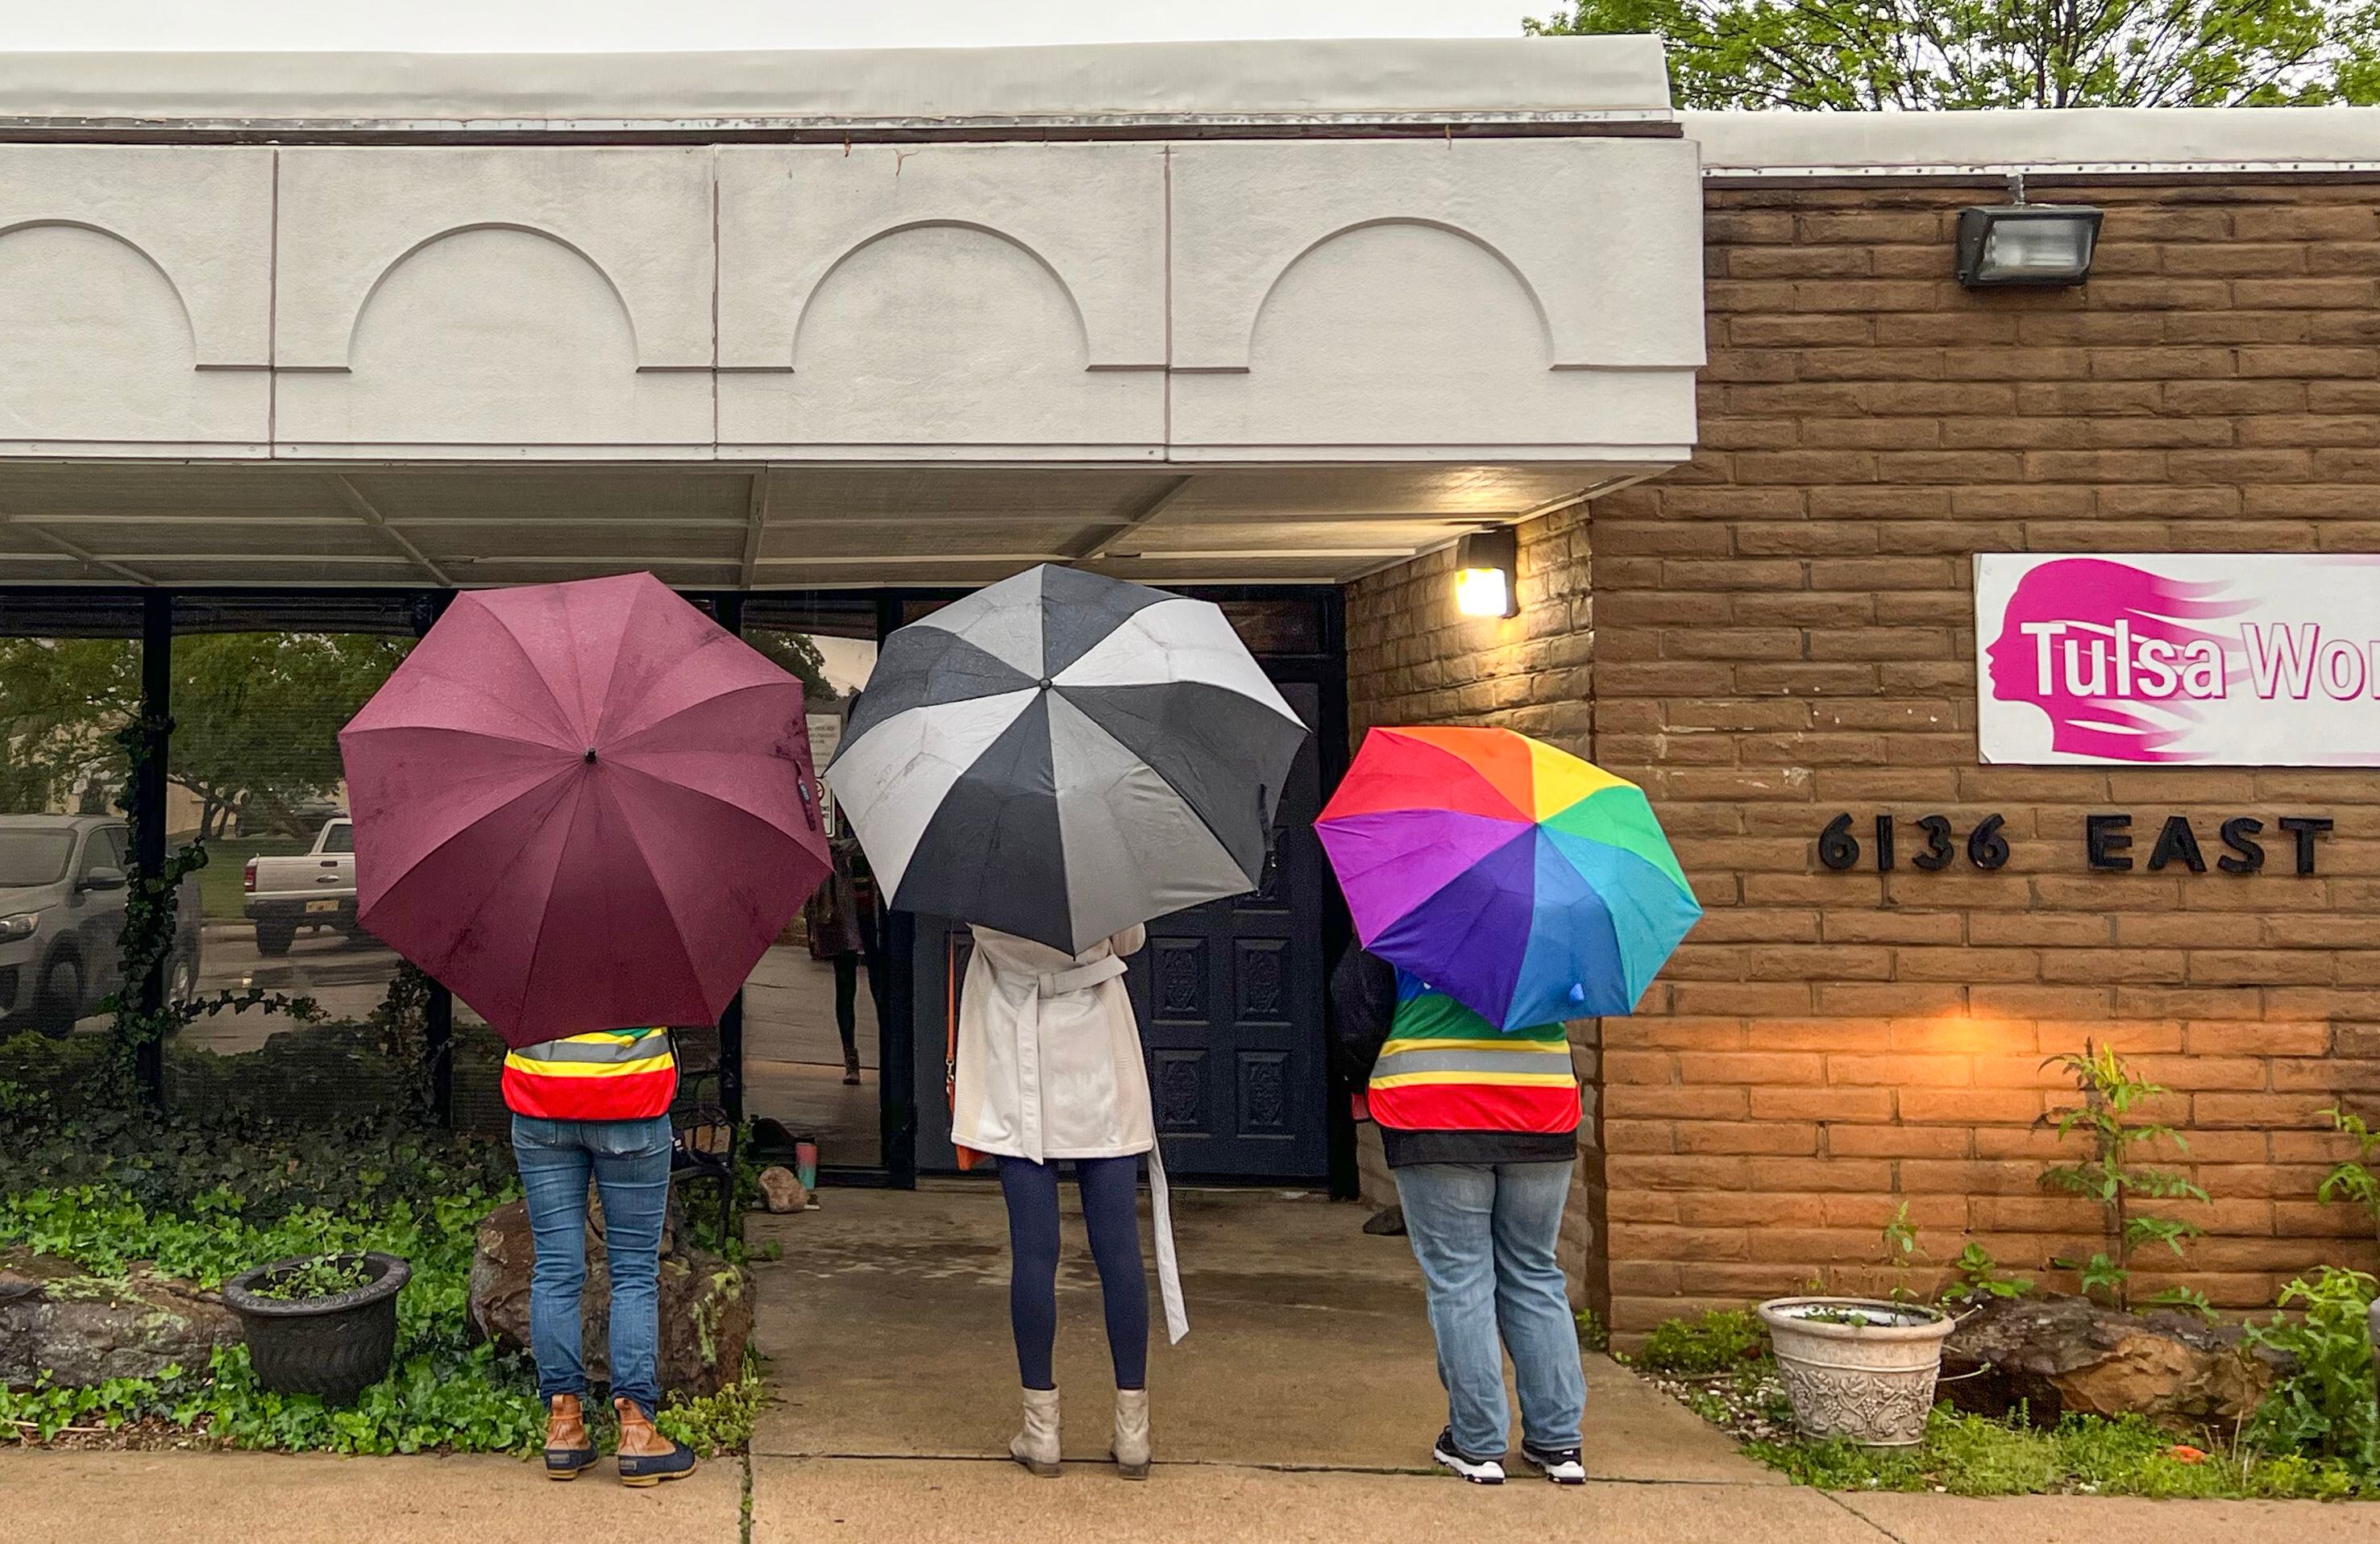 Voluntarias a las puertas de la Tulsa Women´s Clinic.